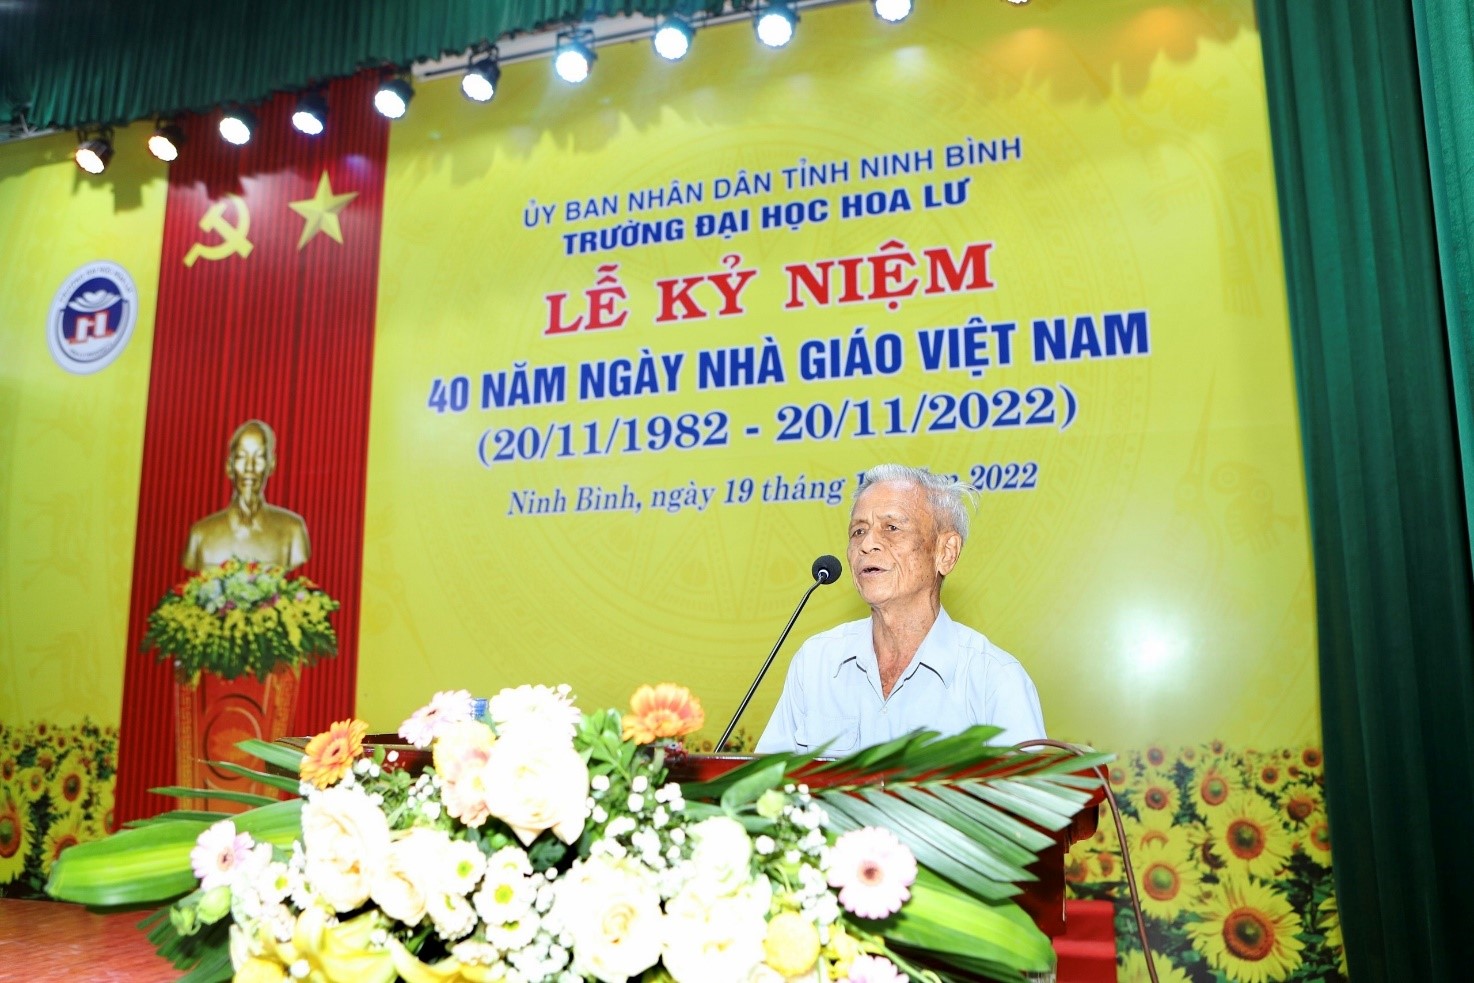 Lễ kỷ niệm 40 năm ngày Nhà giáo Việt Nam (20/11/1982 - 20/11/2022)